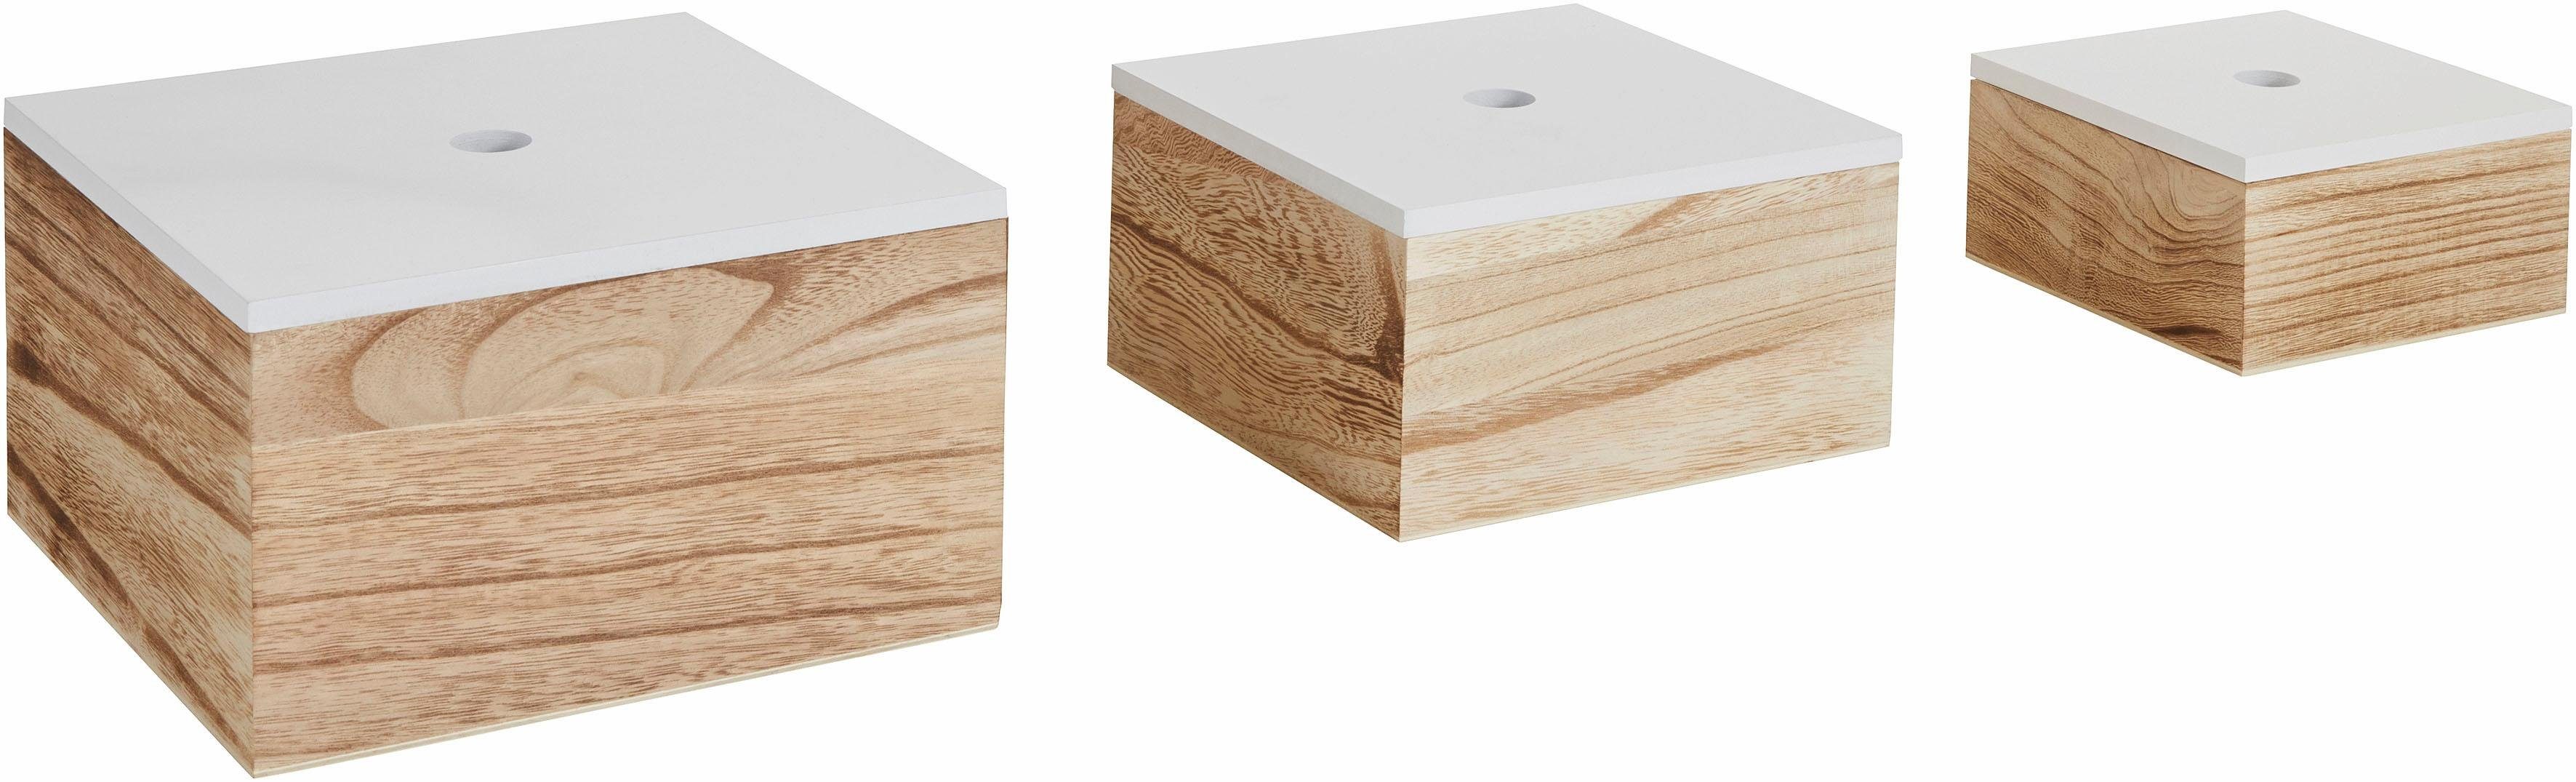 Zeller Present Aufbewahrungsbox, 3er Set, Holz, weiß/natur, Maße (B/T/H):  16/16/8 cm, 20/20/11,2 cm und 24/24/14 cm